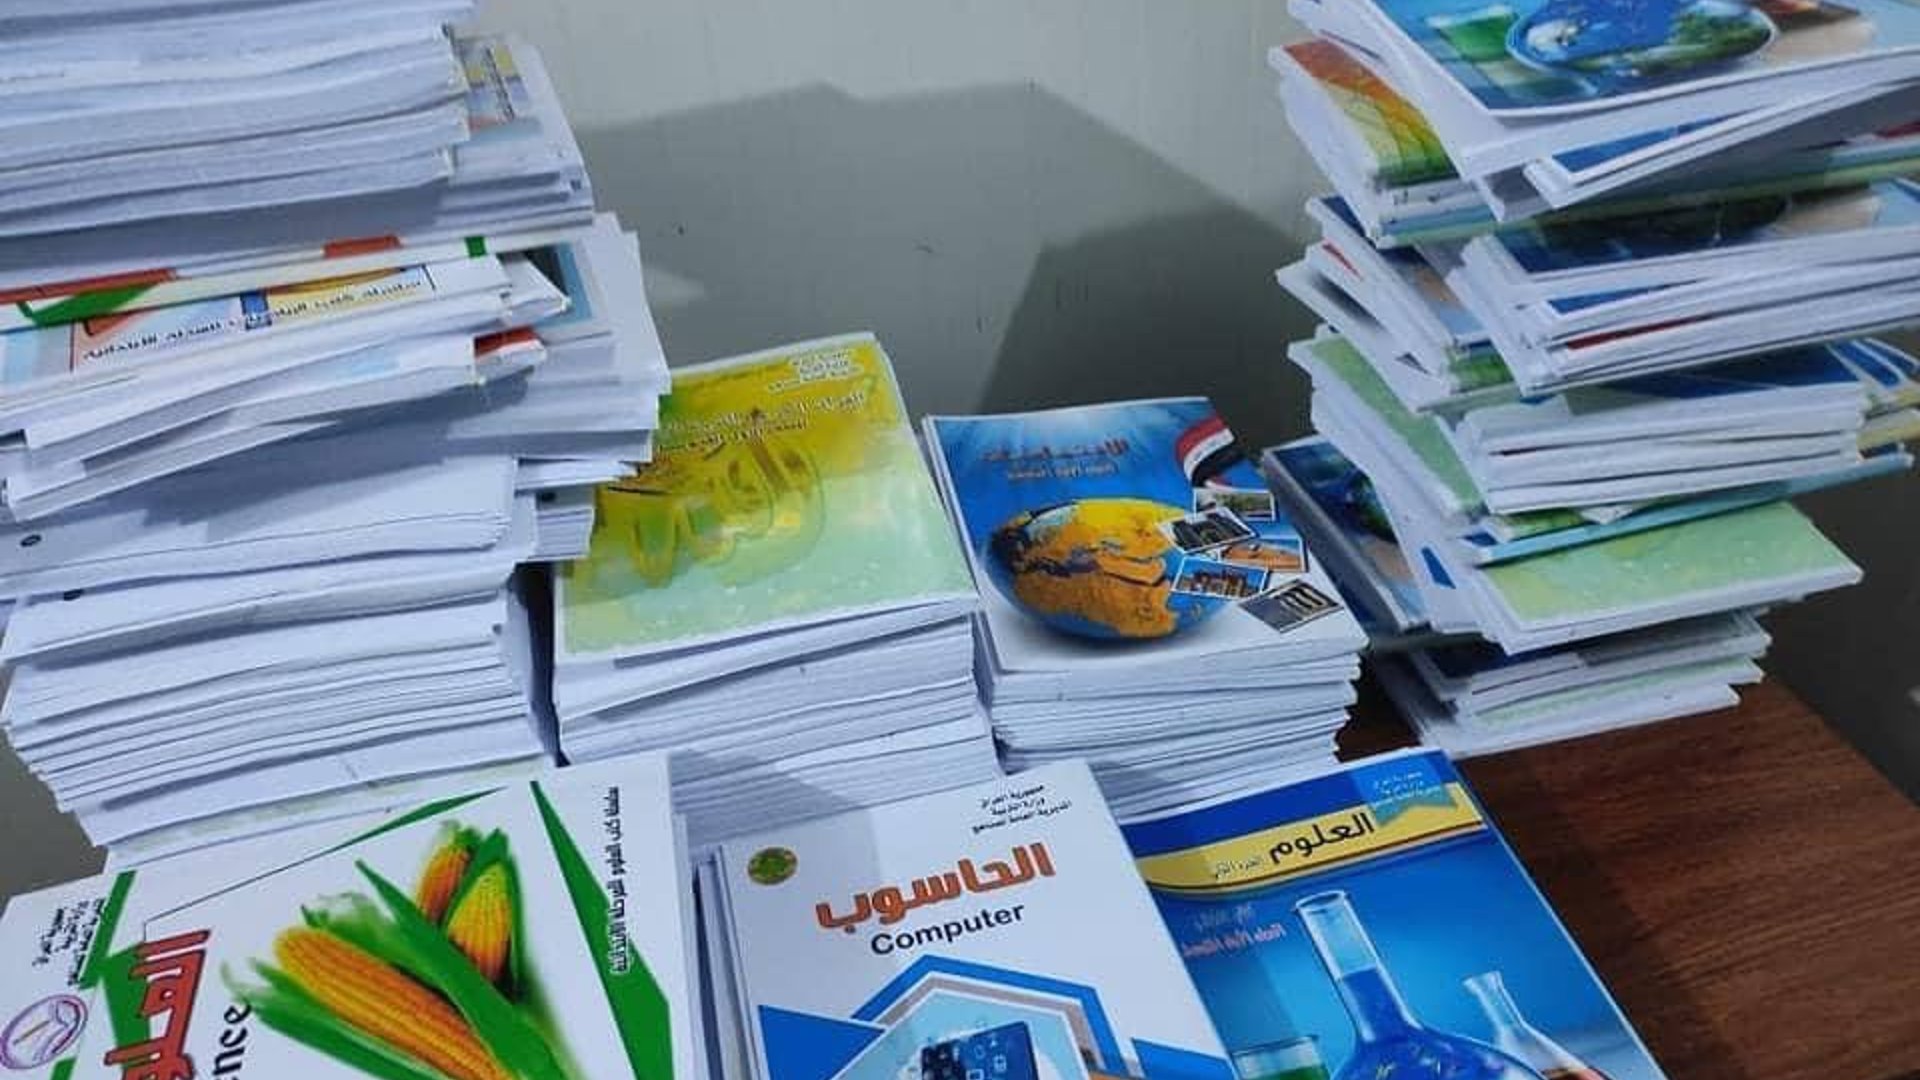 بغداد: فريق “زعفرانيون” يوزع الكتب على المدارس بعد نقص تجهيز الوزارة (صور)  » +964